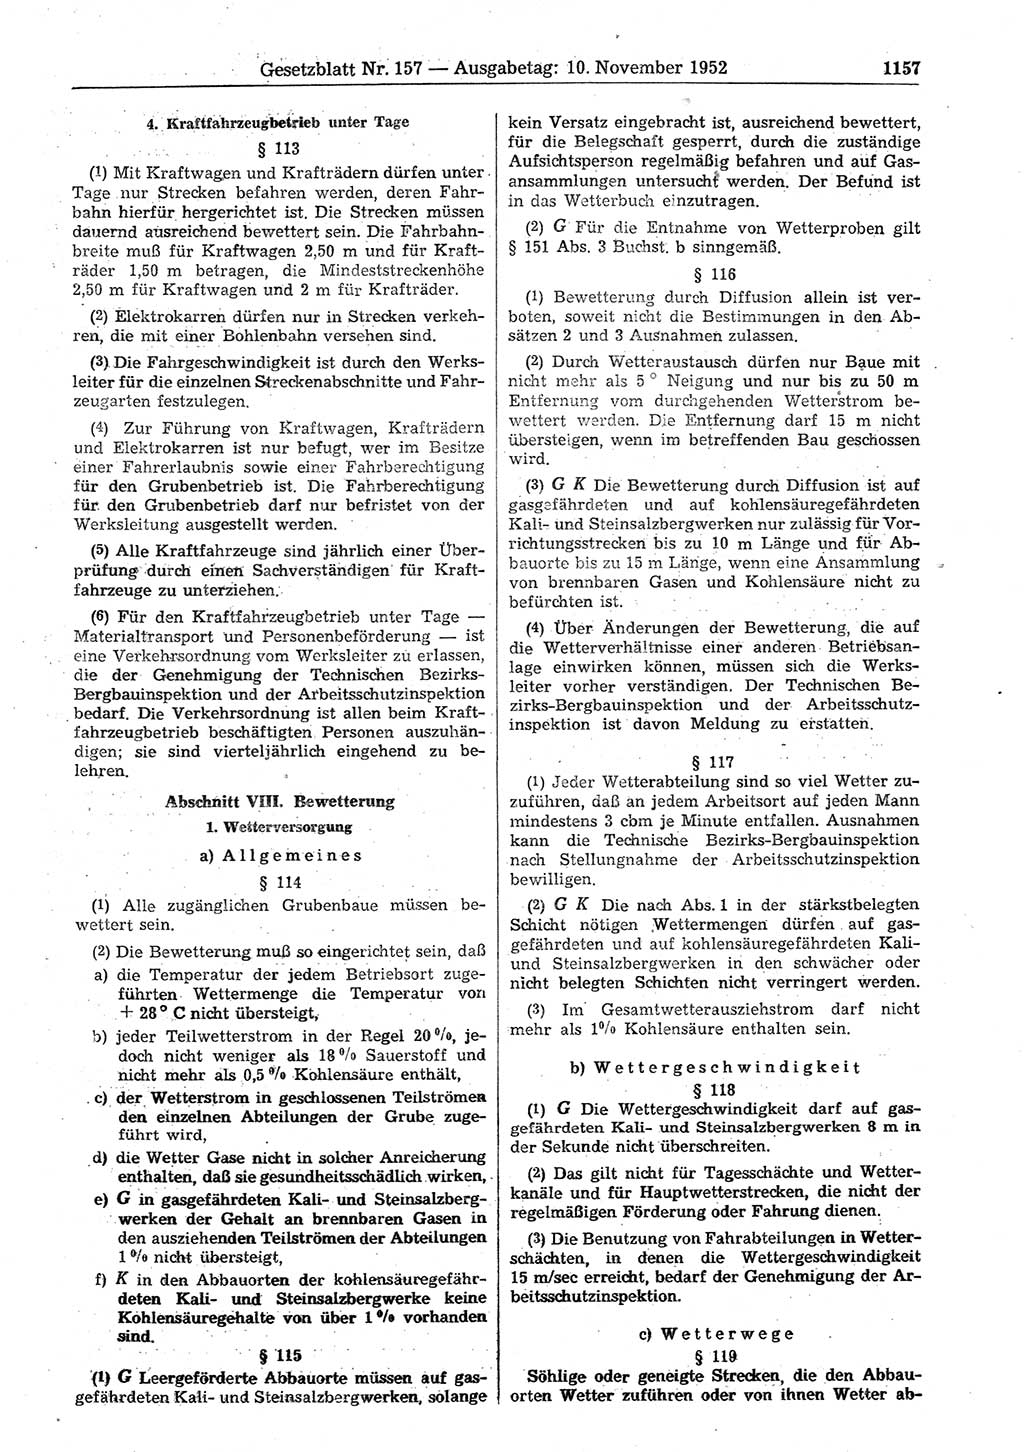 Gesetzblatt (GBl.) der Deutschen Demokratischen Republik (DDR) 1952, Seite 1157 (GBl. DDR 1952, S. 1157)